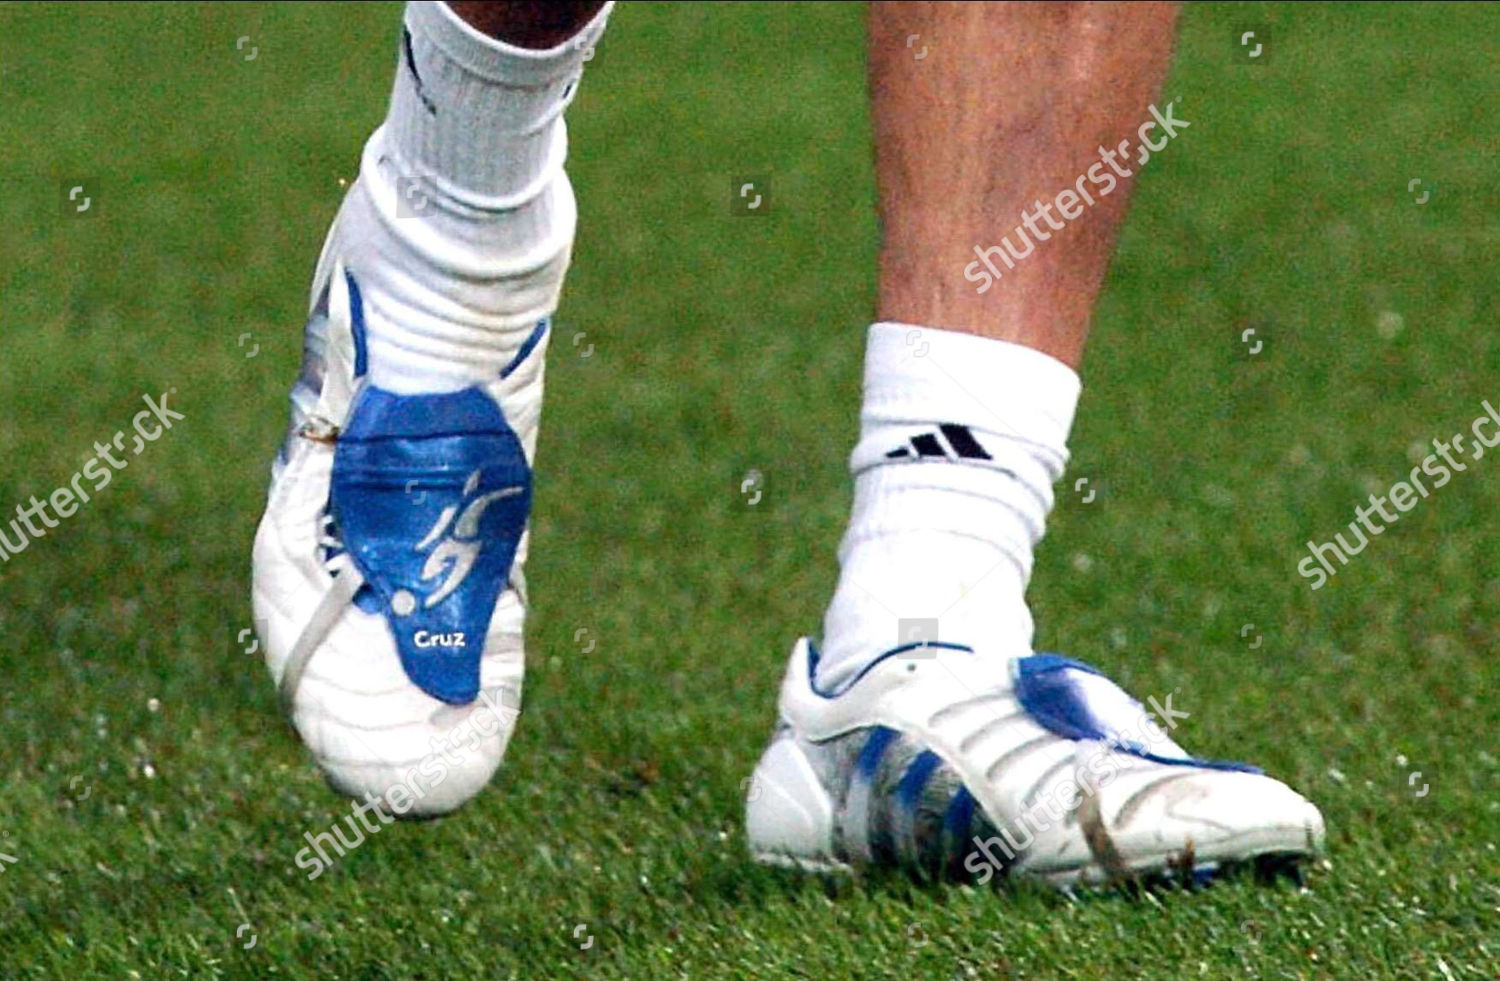 david beckham soccer boots